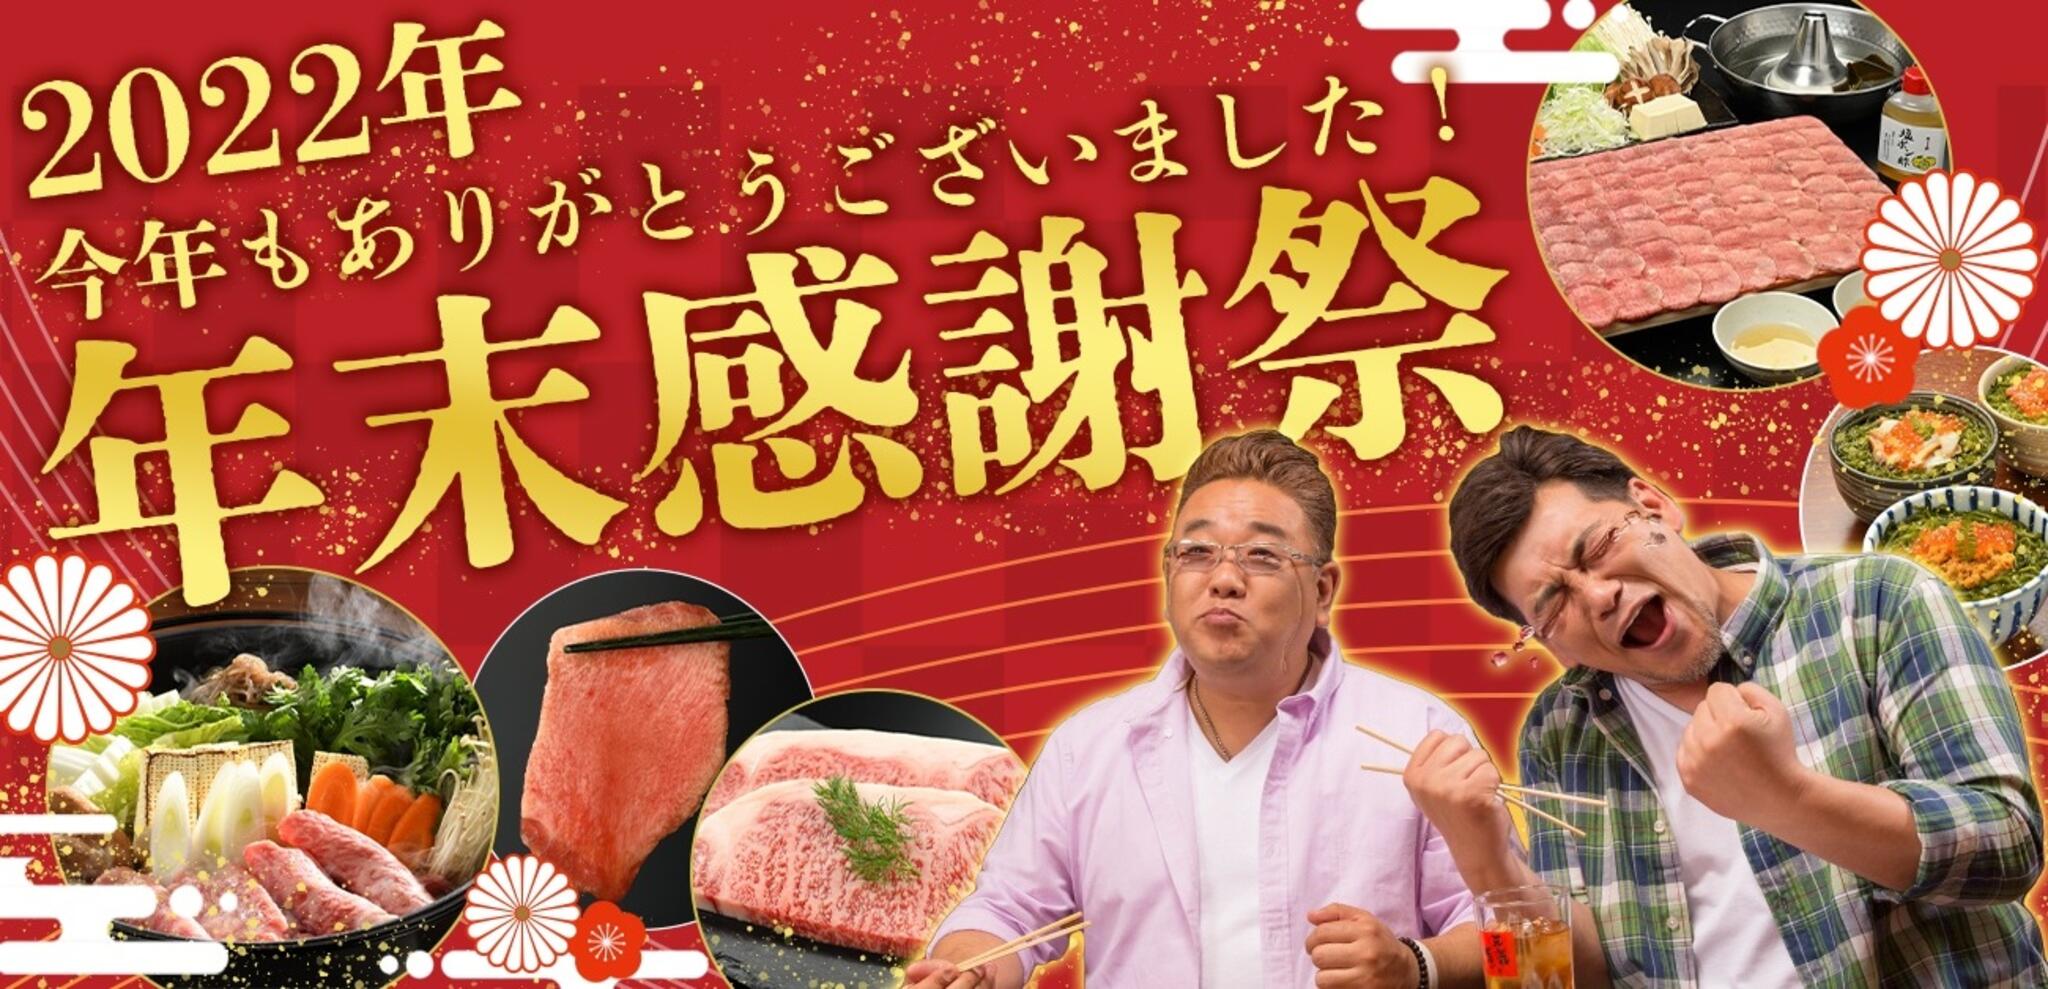 焼肉冷麺やまなか家 北上店からのお知らせ(🏳‍🌈2022年《オンラインショップ》年末感謝祭)に関する写真